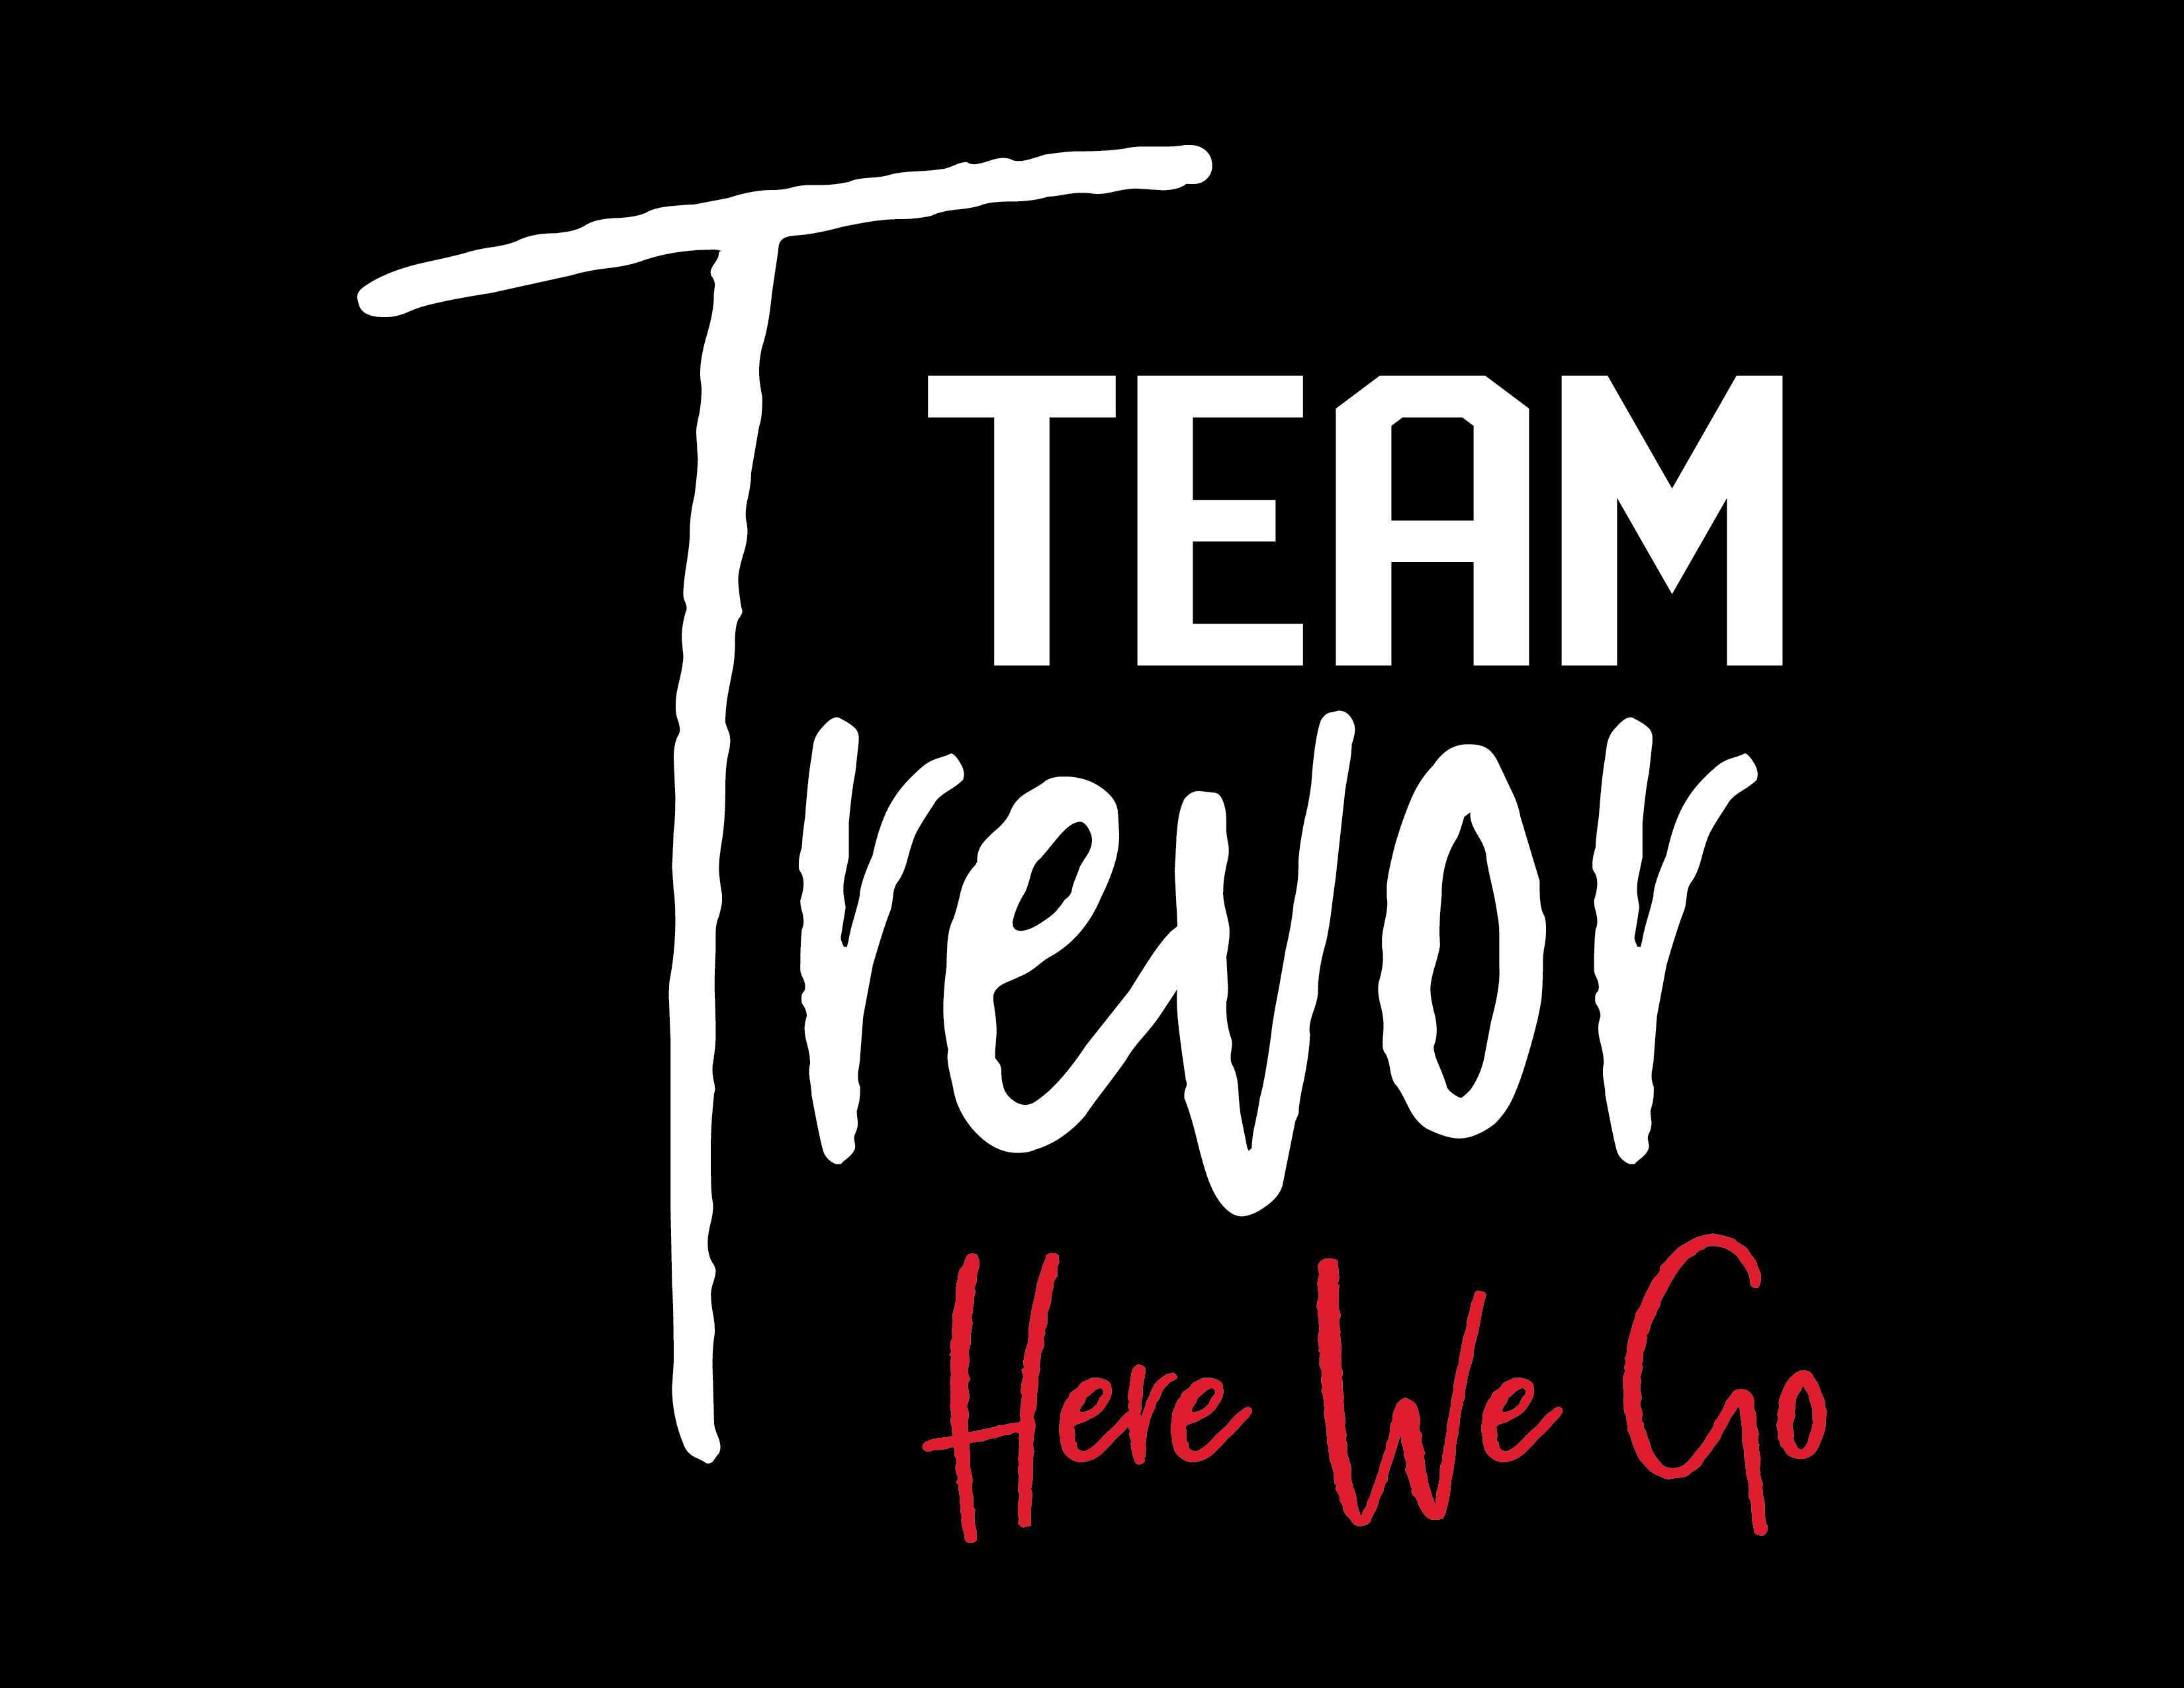 Team Trevor